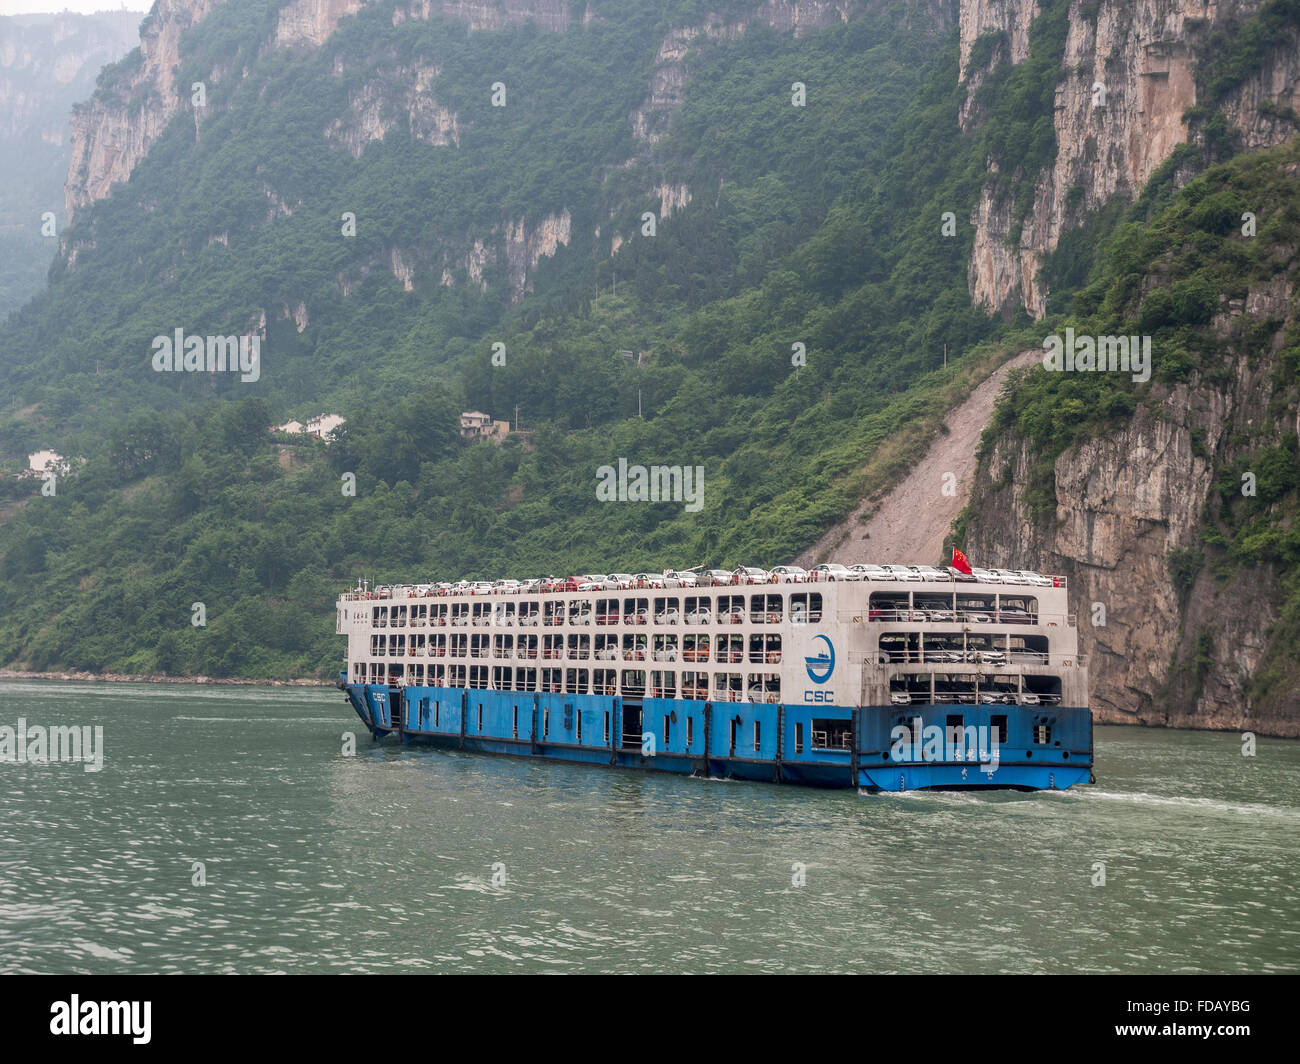 Ein Frachtschiff von CSC RoRo Logistik Company Limited neue Autotransporte flussaufwärts am Jangtse-Fluss In der Provinz Hubei China Stockfoto